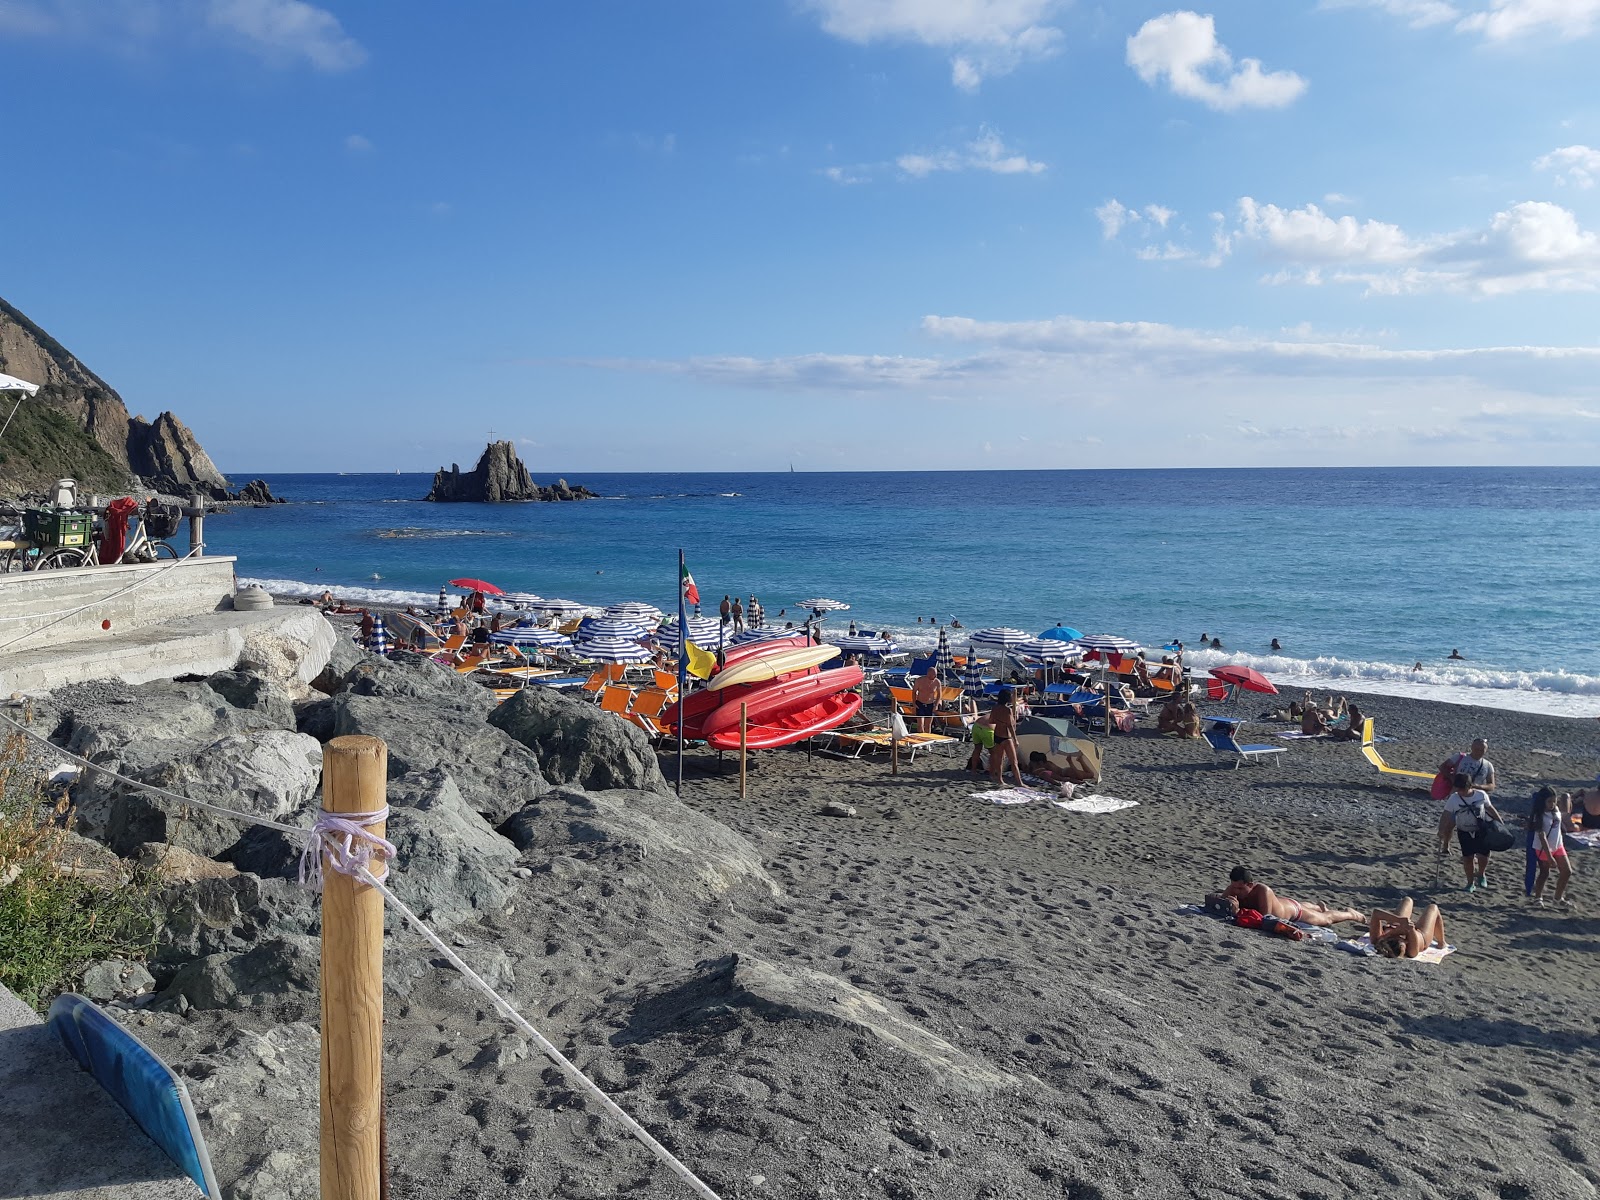 Spiaggia Riva Trigoso的照片 野外区域